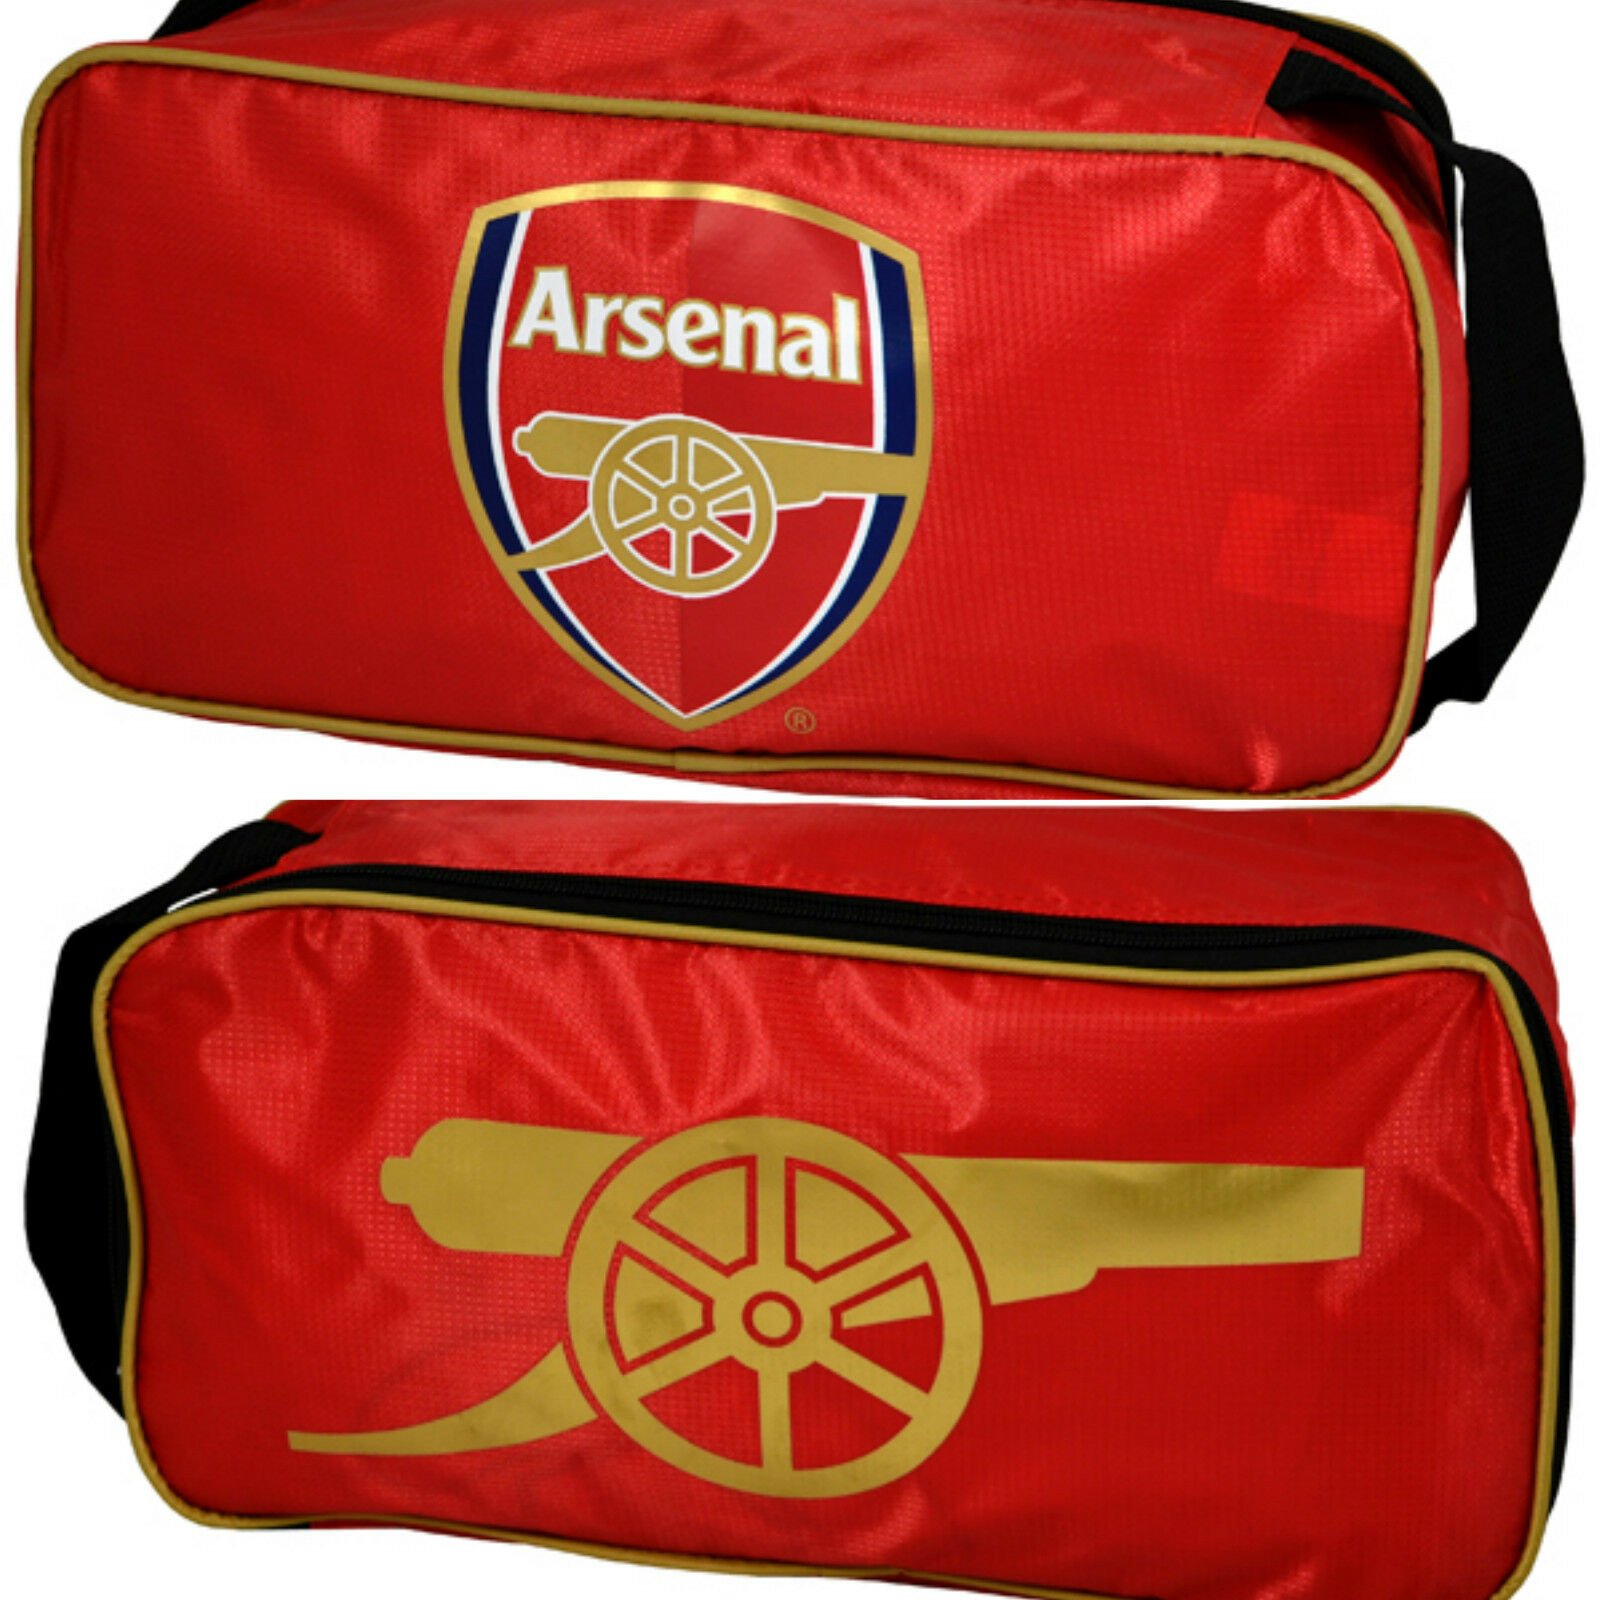 arsenal football boot bag